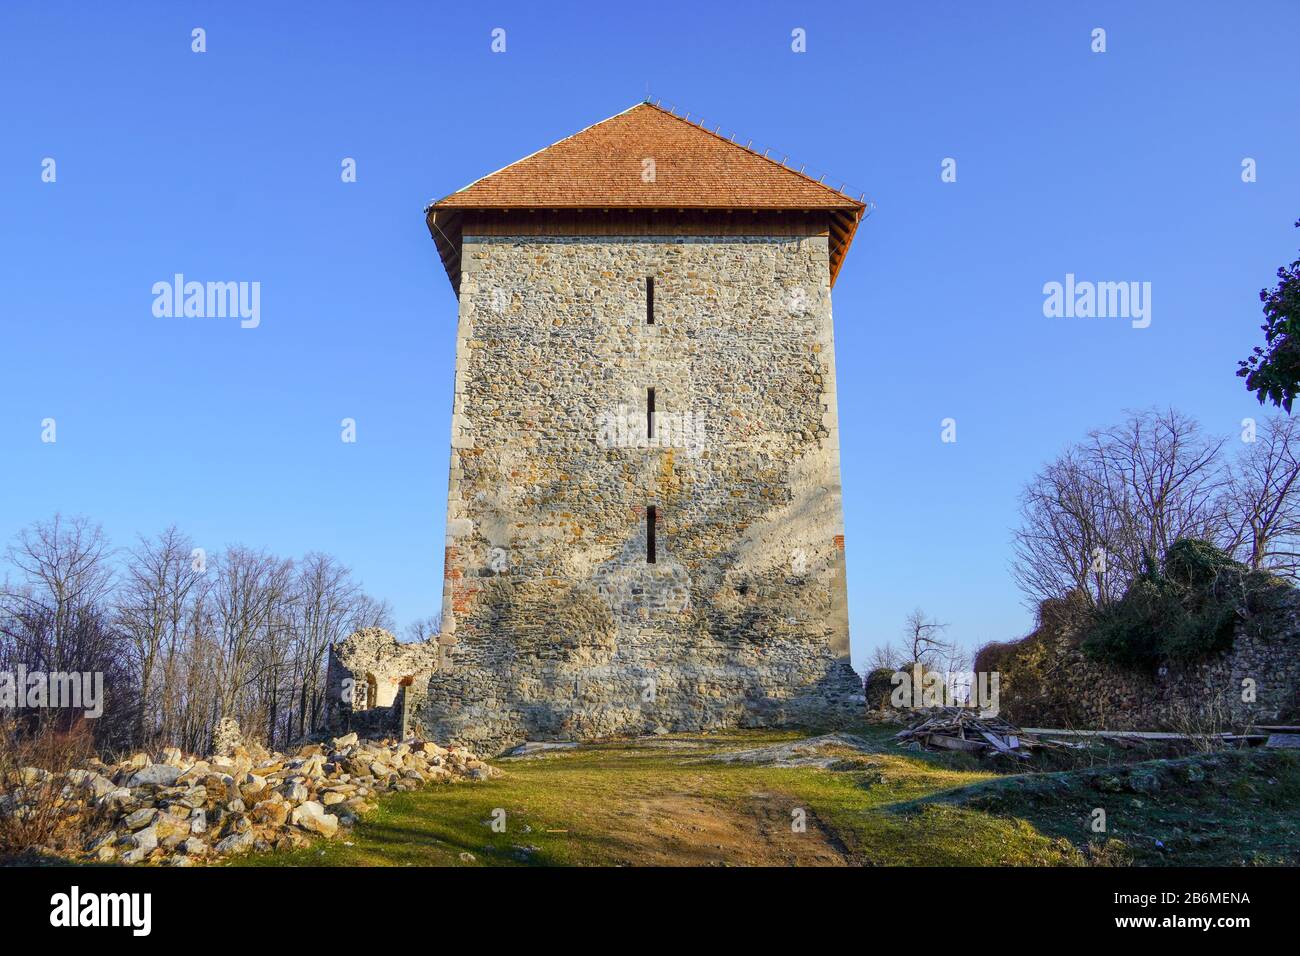 La torre medievale restaurata principale, costruita nel 1256. Foto Stock